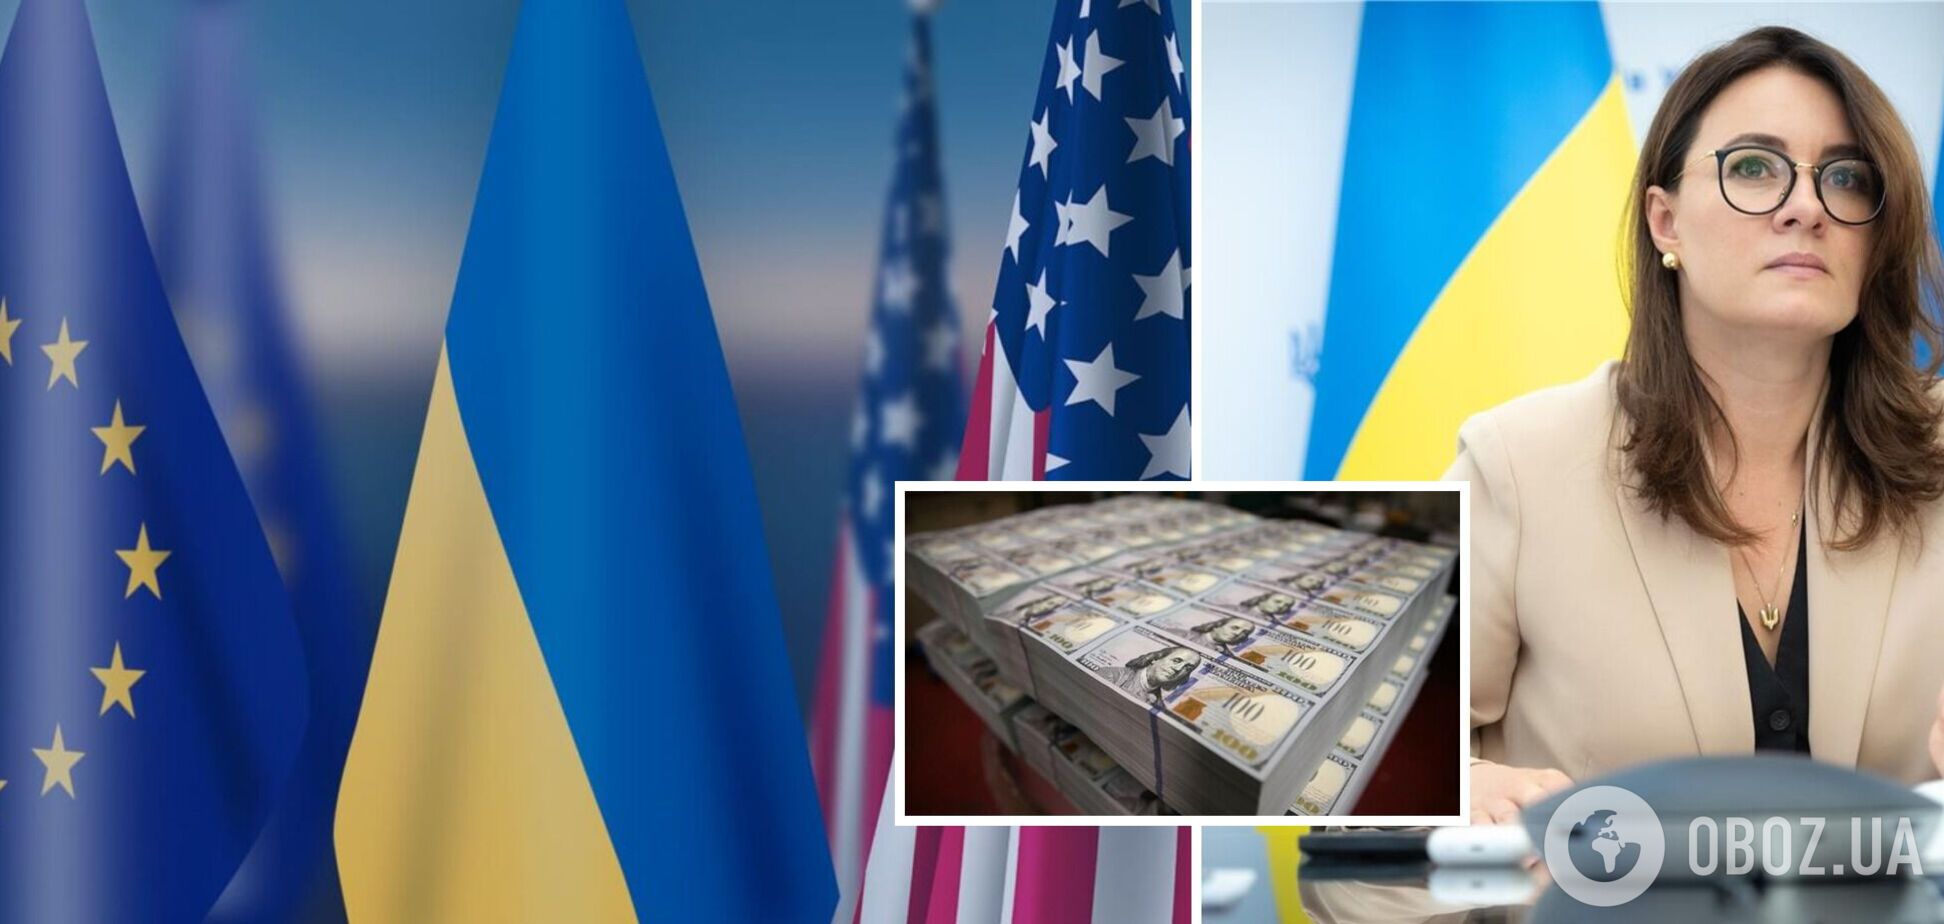 Украина будет вынуждена отложить выплату зарплат госслужащим и пенсии миллионам граждан, если ЕС и США не окажут финпомощь